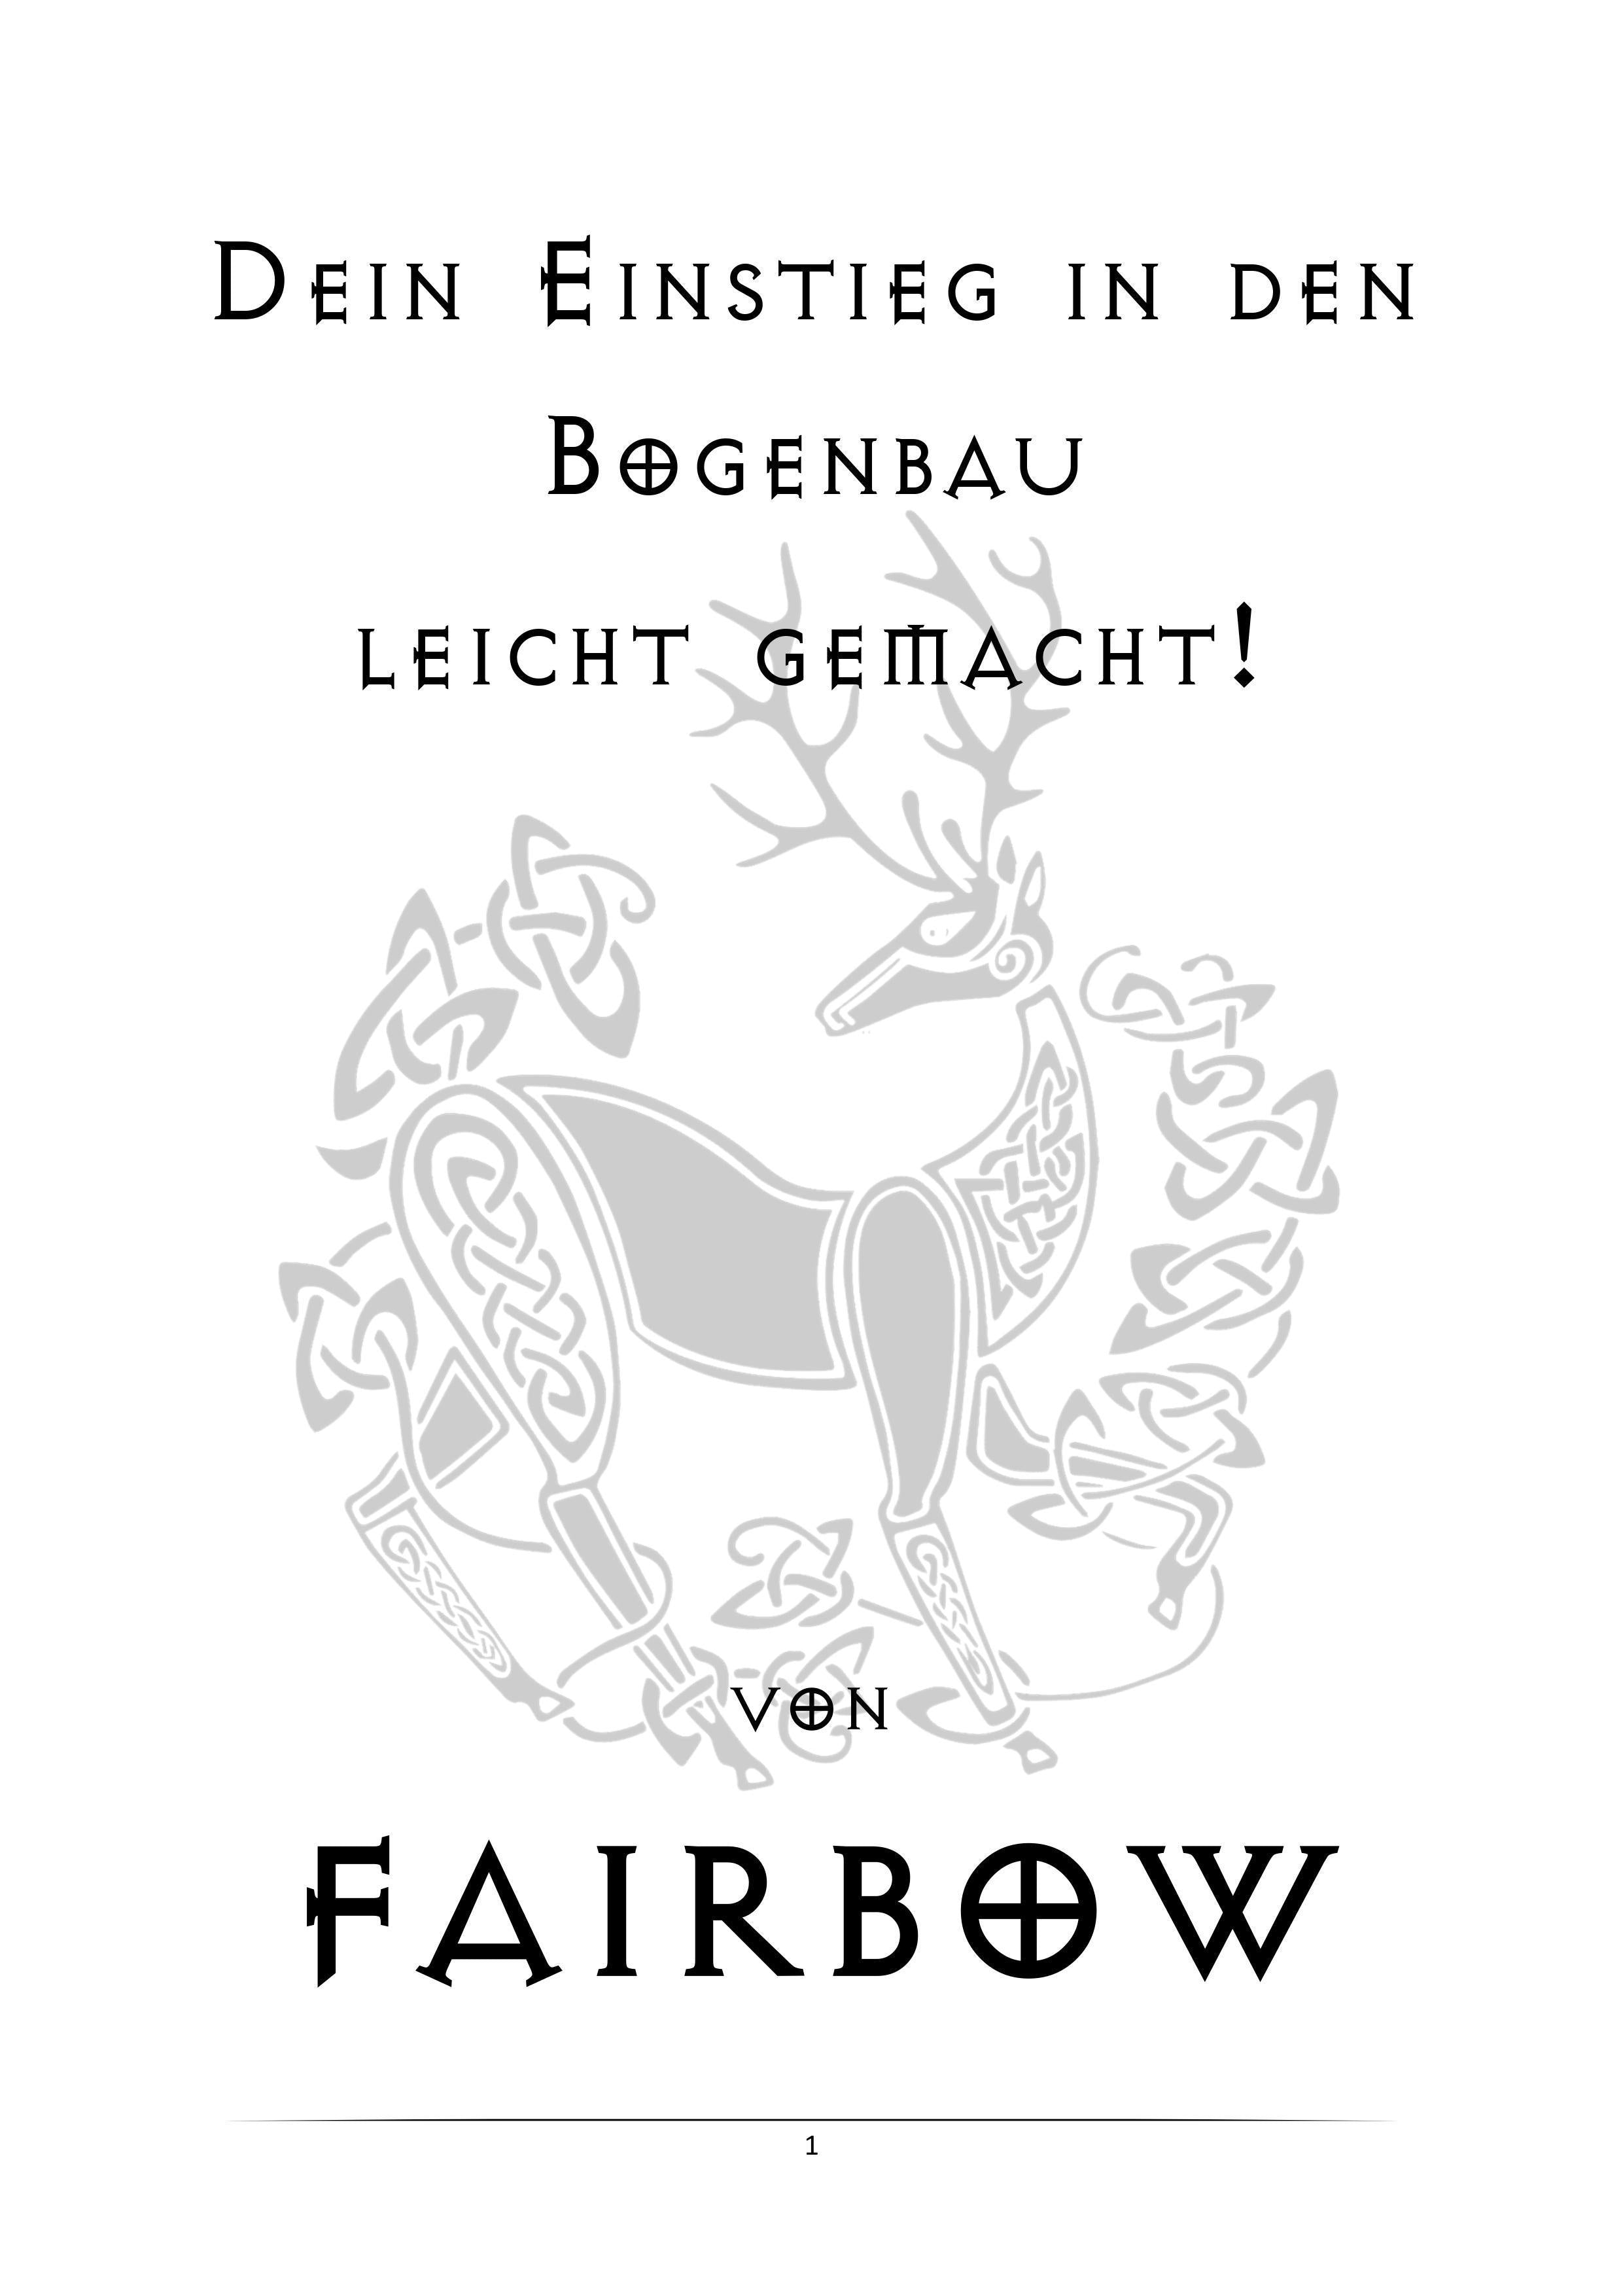 DEIN EINSTIEG IN DEN BOGENBAU FREE E-BOOKLET-Book-Fairbow-Fairbow